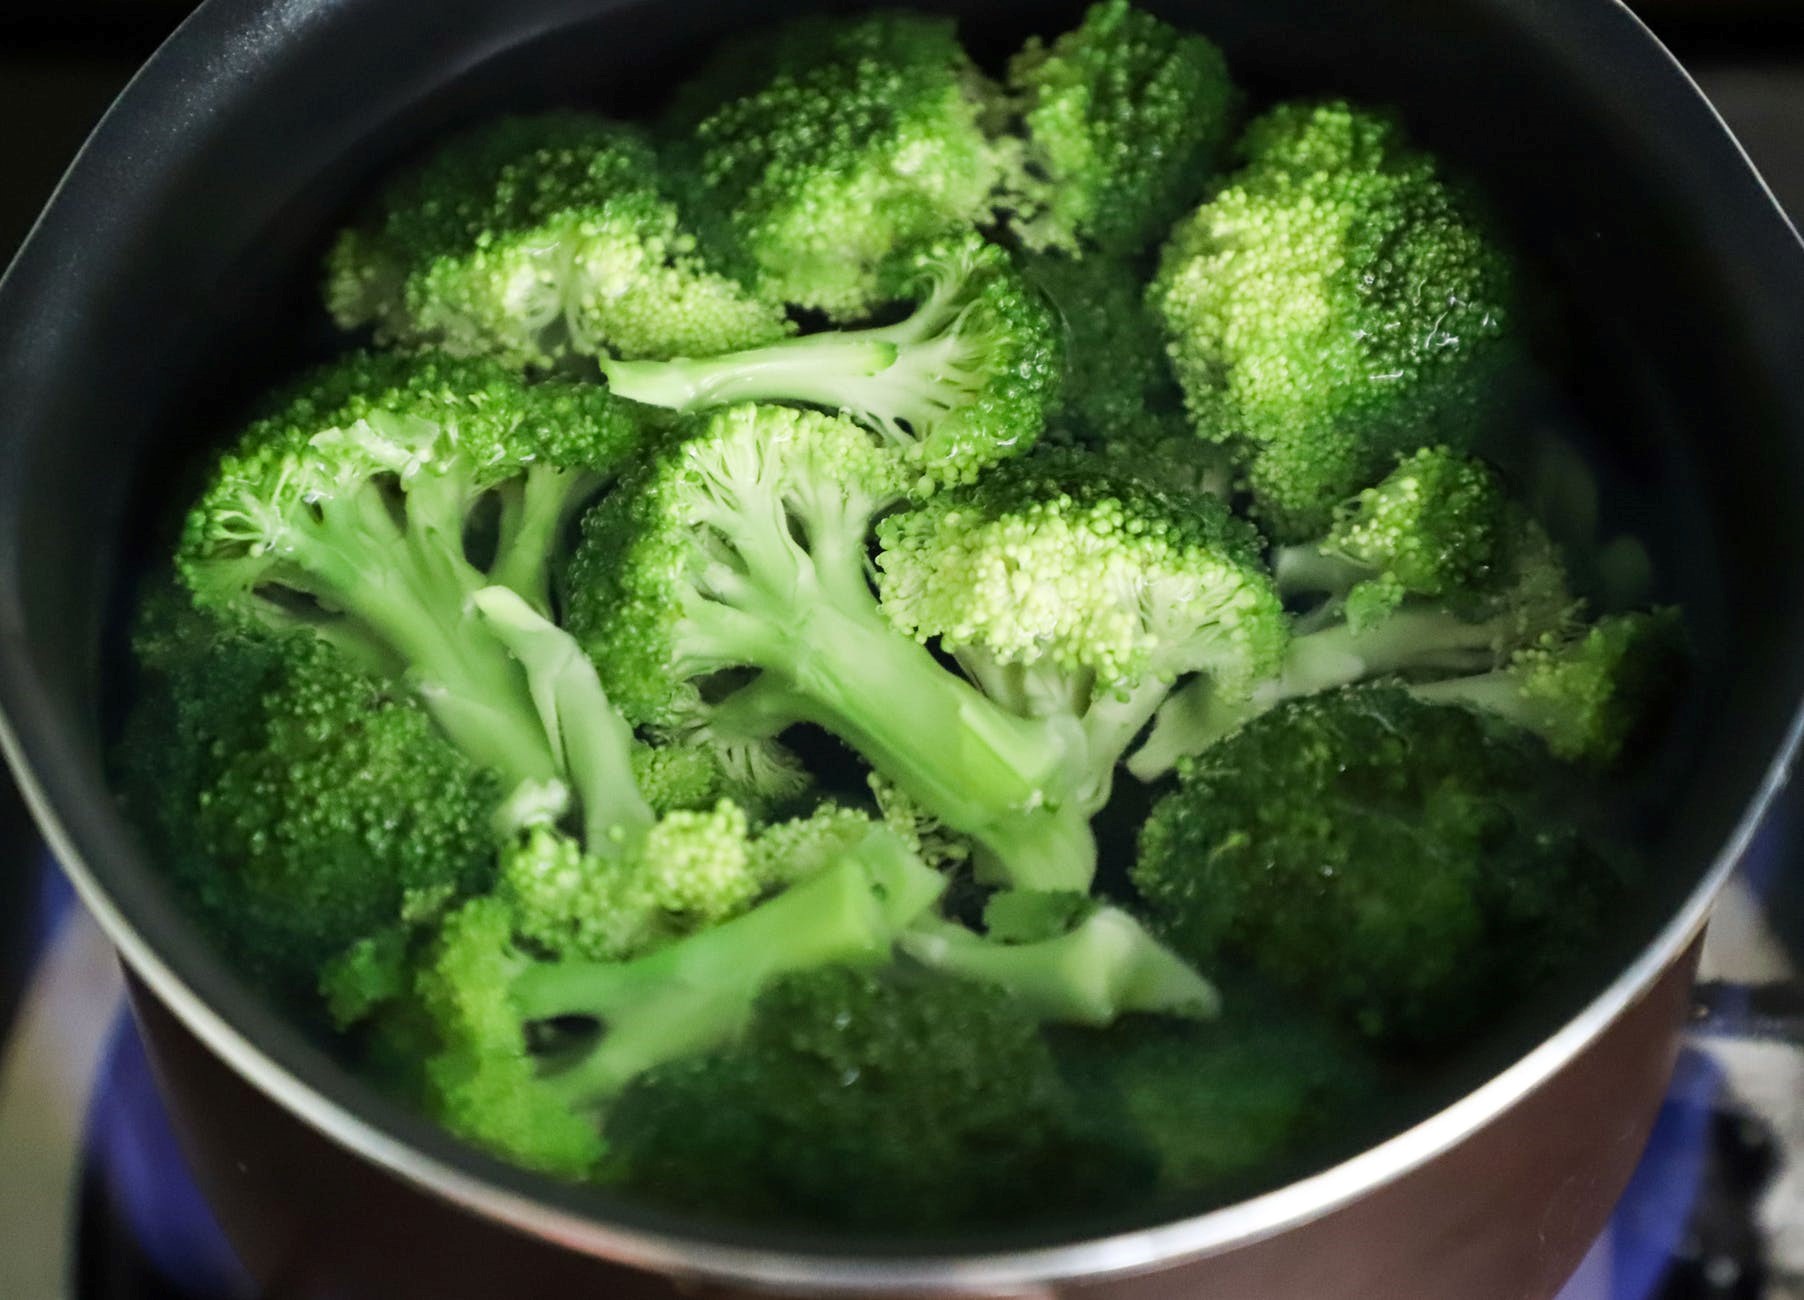 Bông cải xanh có thể làm salad hoặc chế biến thành các món ăn